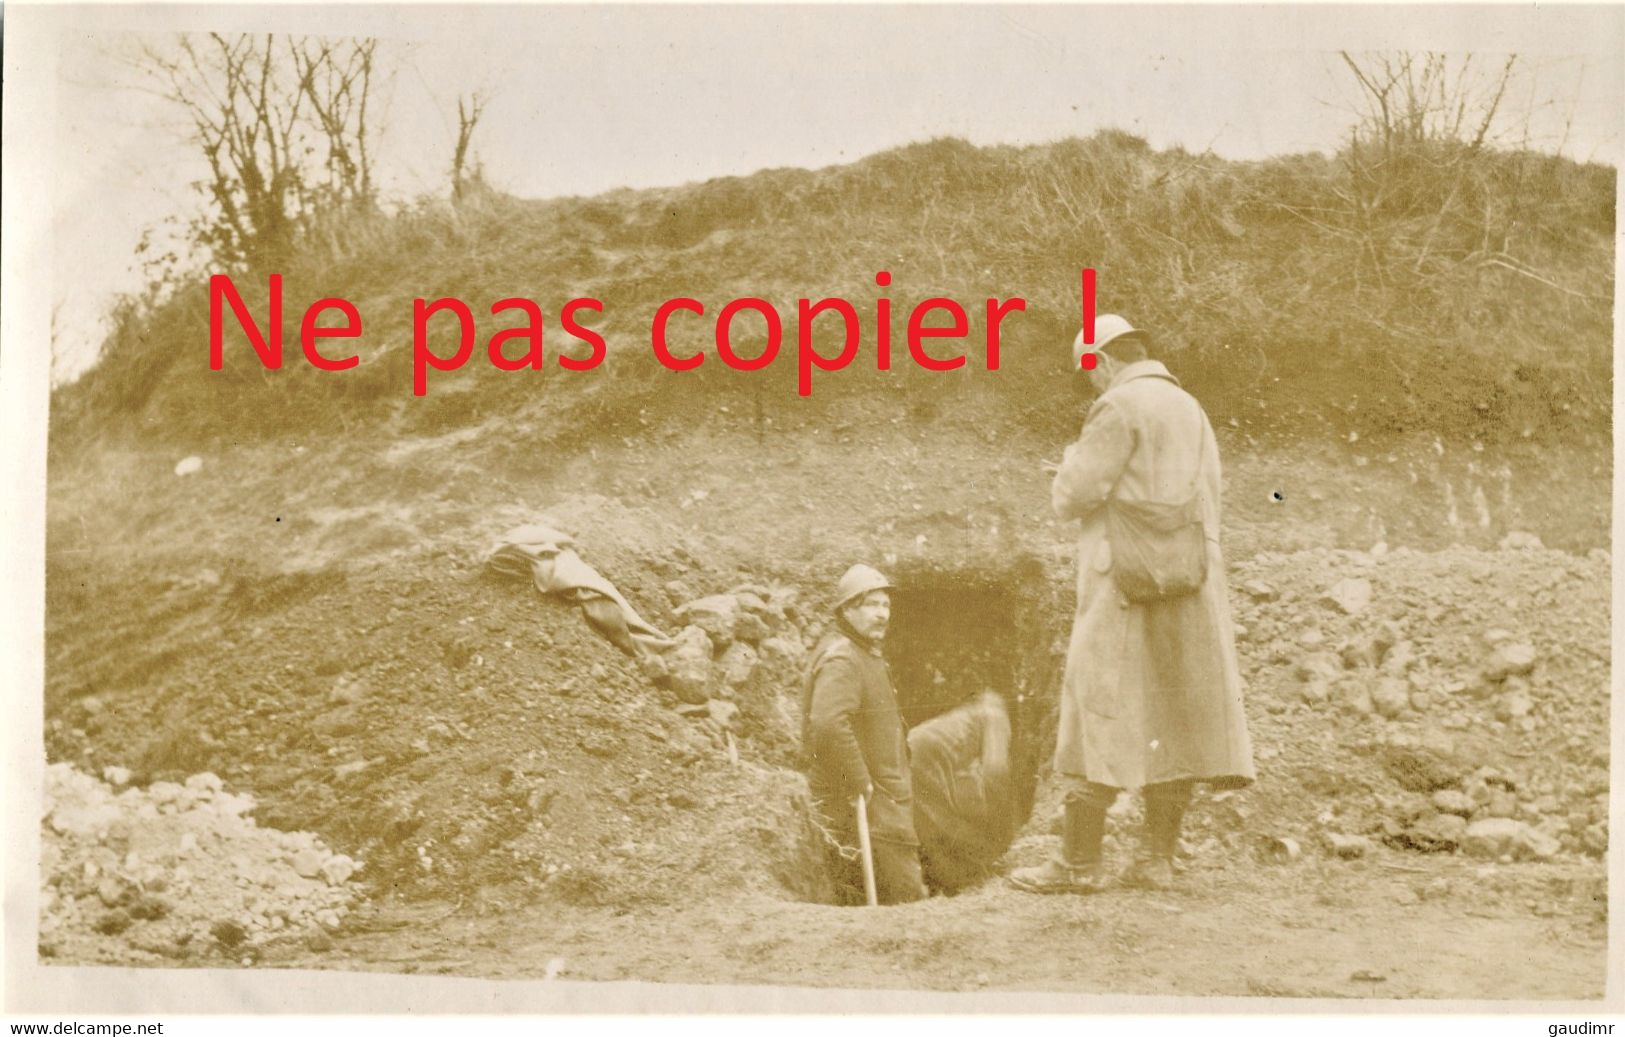 PHOTO FRANCAISE - CREUSEMENT D'UN ABRI A CHUIGNOLLES PRES DE PROYART - CHUIGNES SOMME - GUERRE 1914 1918 - 1914-18